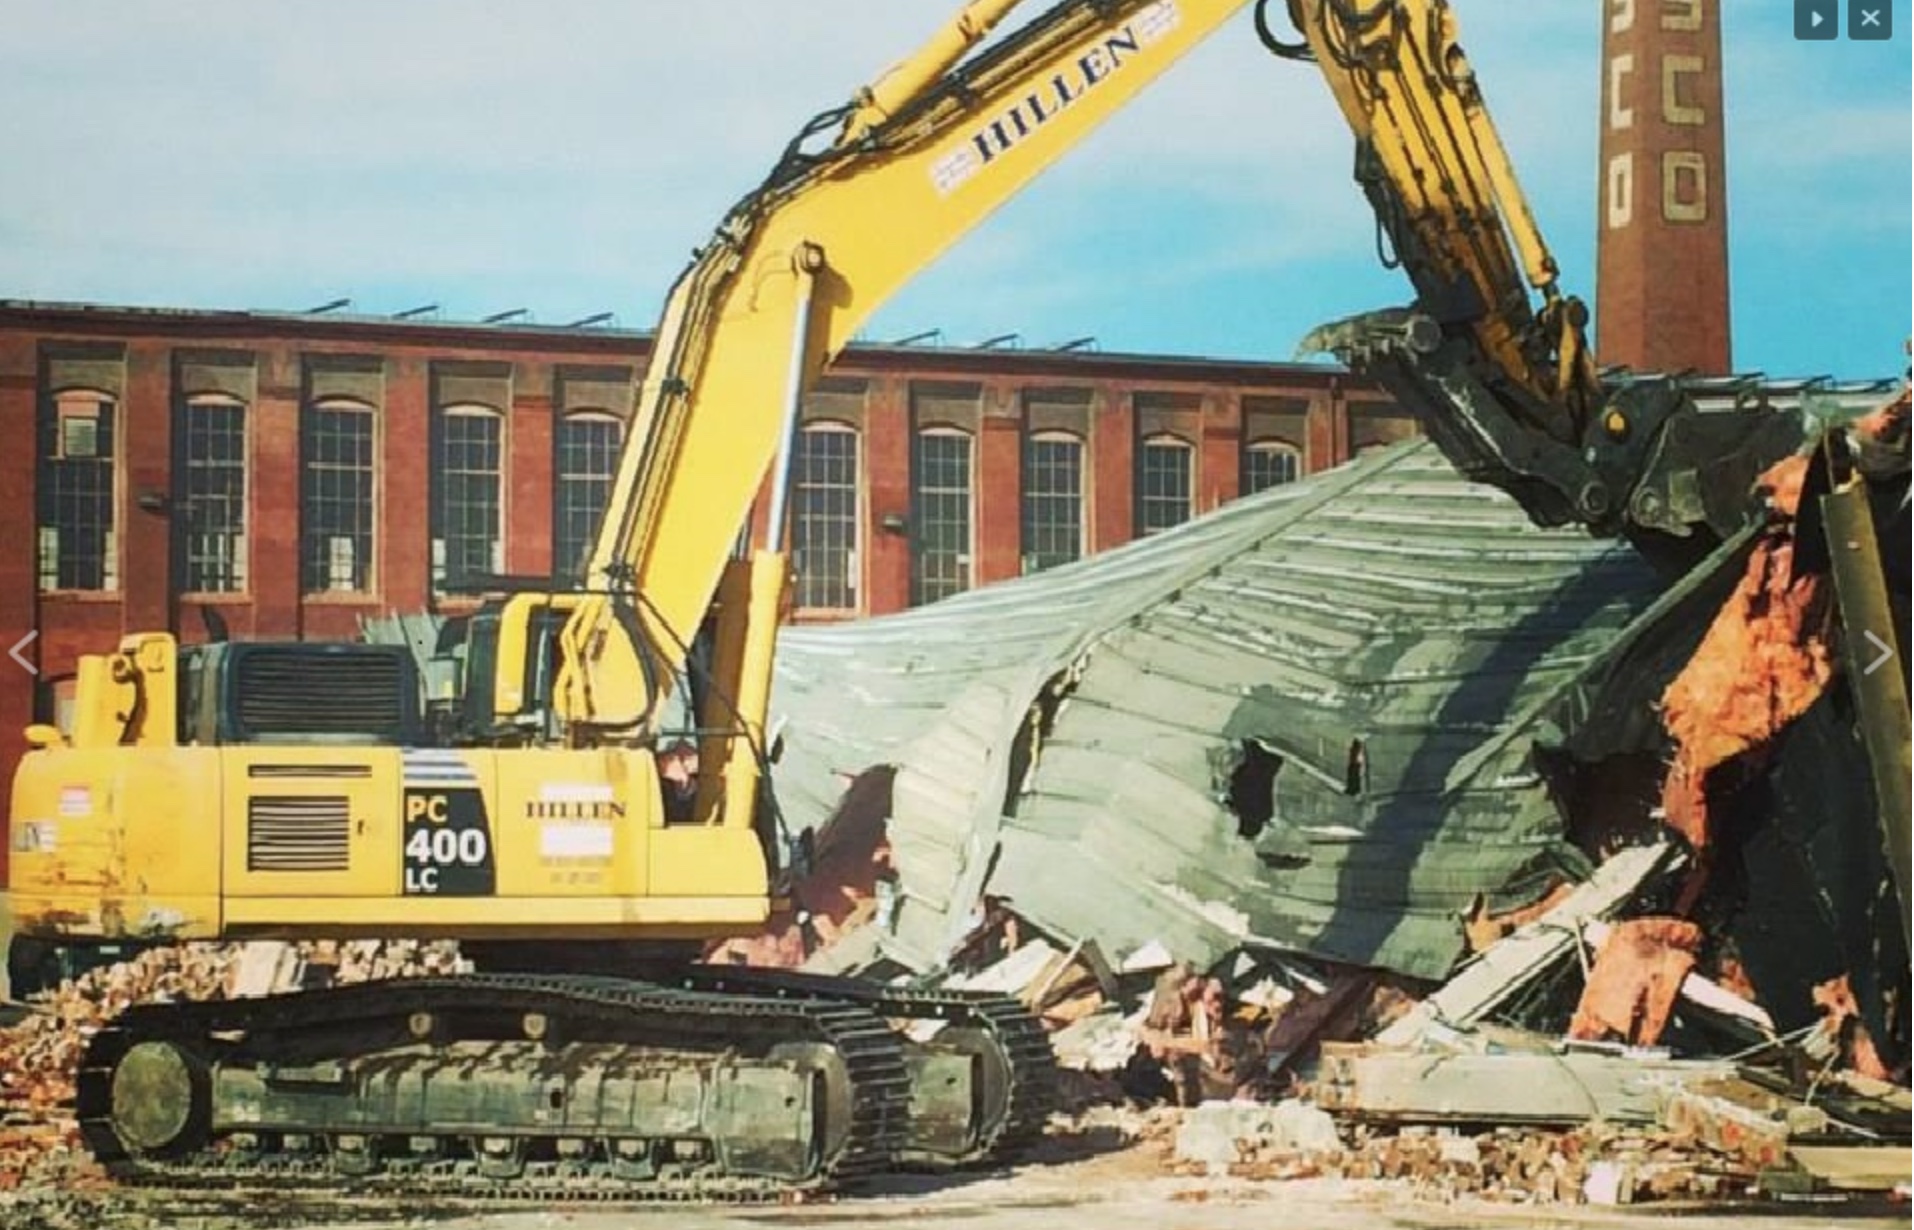 hillen-demolition-1.jpg